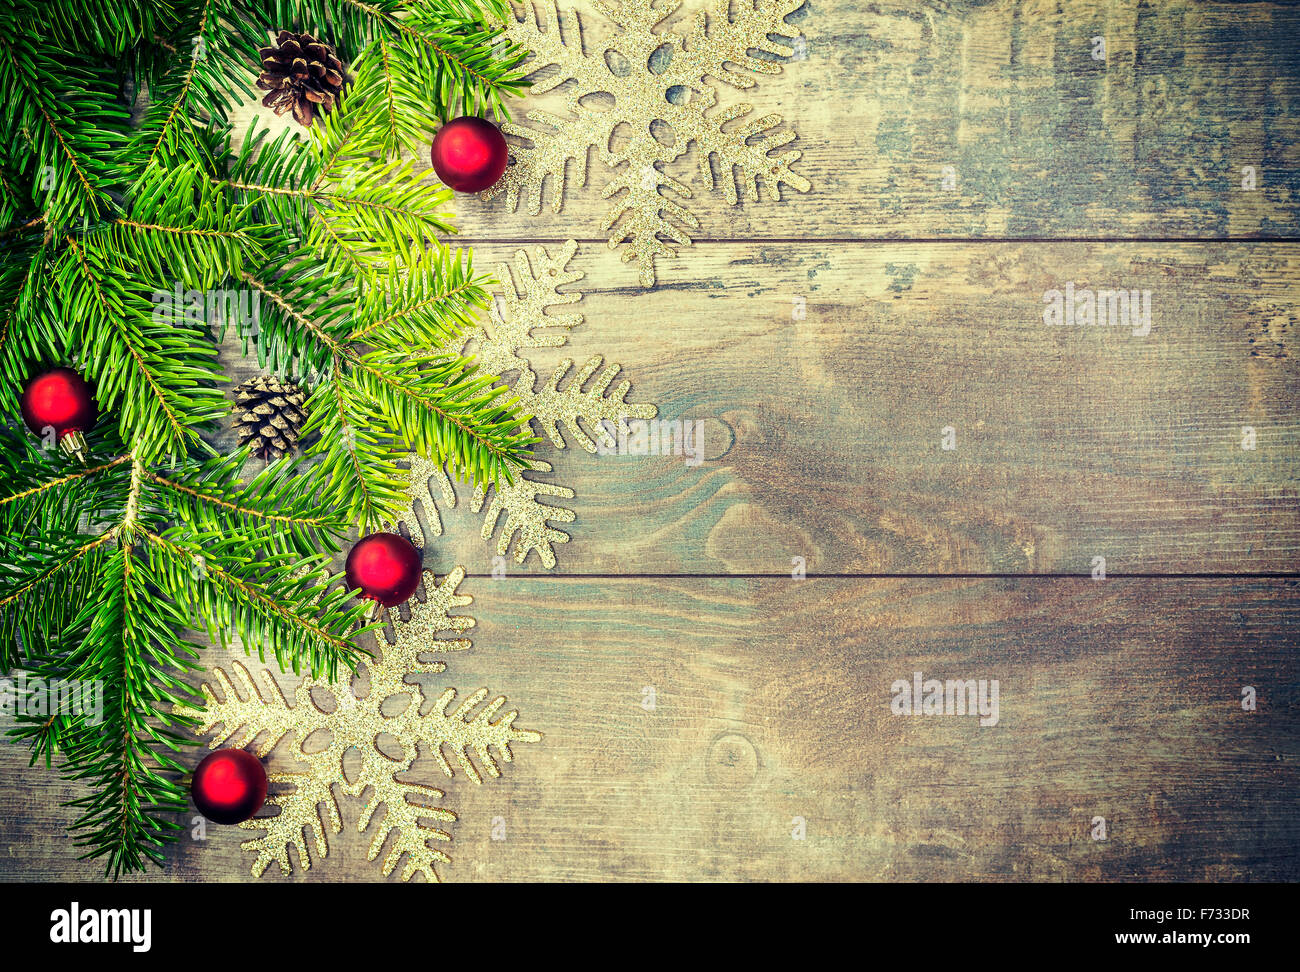 Décorations de Noël aux couleurs rétro sur une vieille table en bois, copie espace, faible profondeur de champ. Banque D'Images